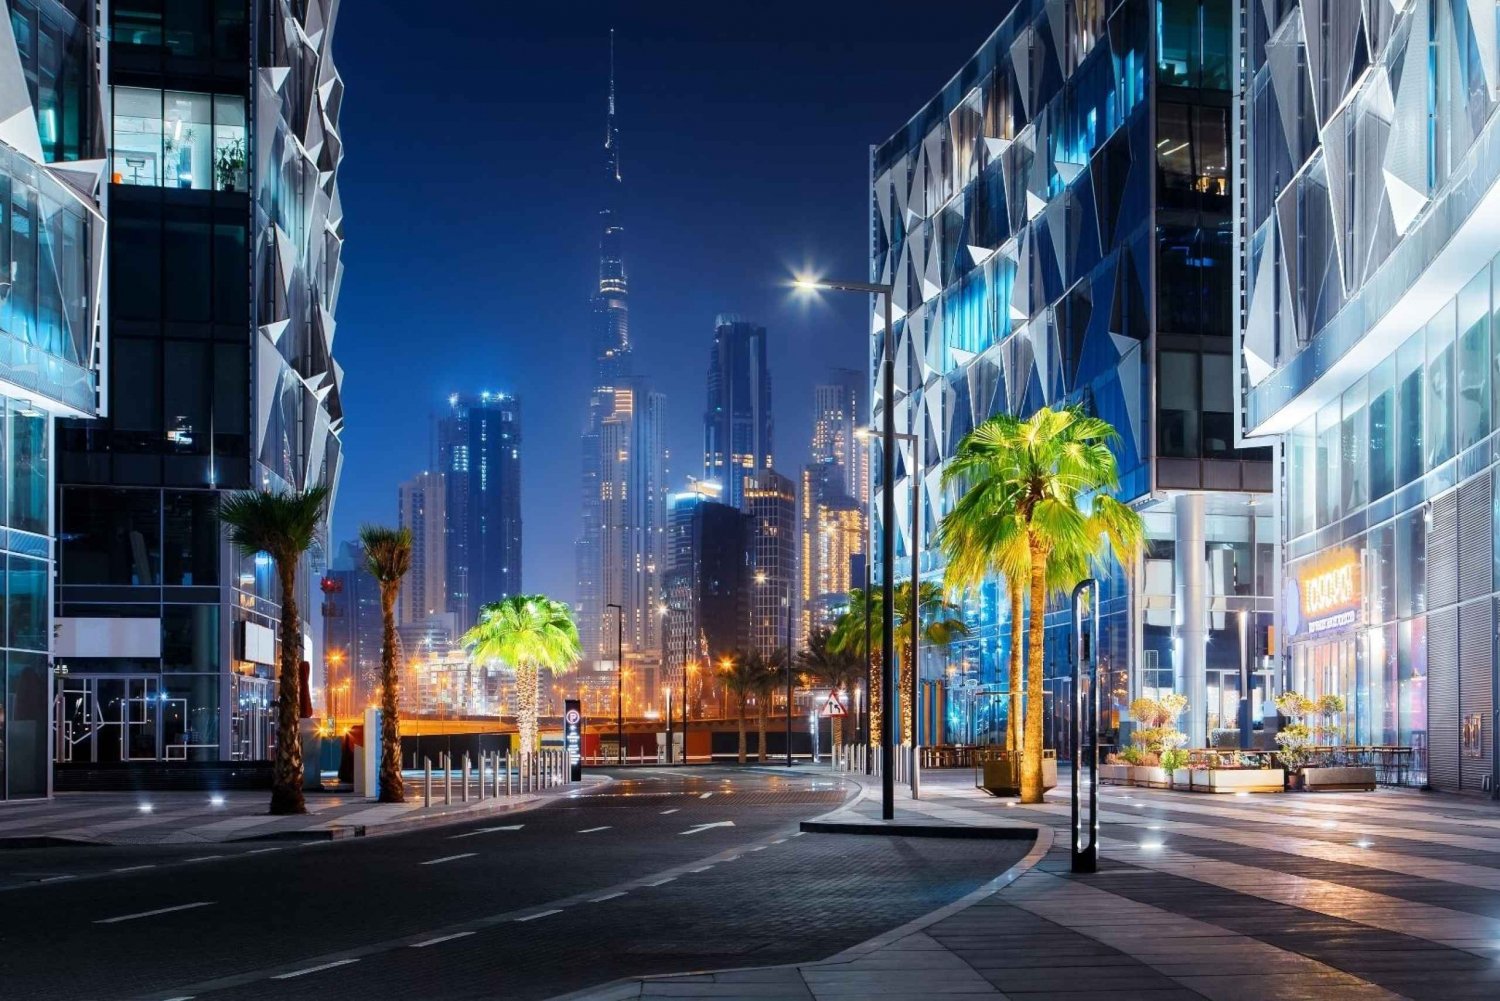 Dubai: 4 timmars rundtur på kvällen